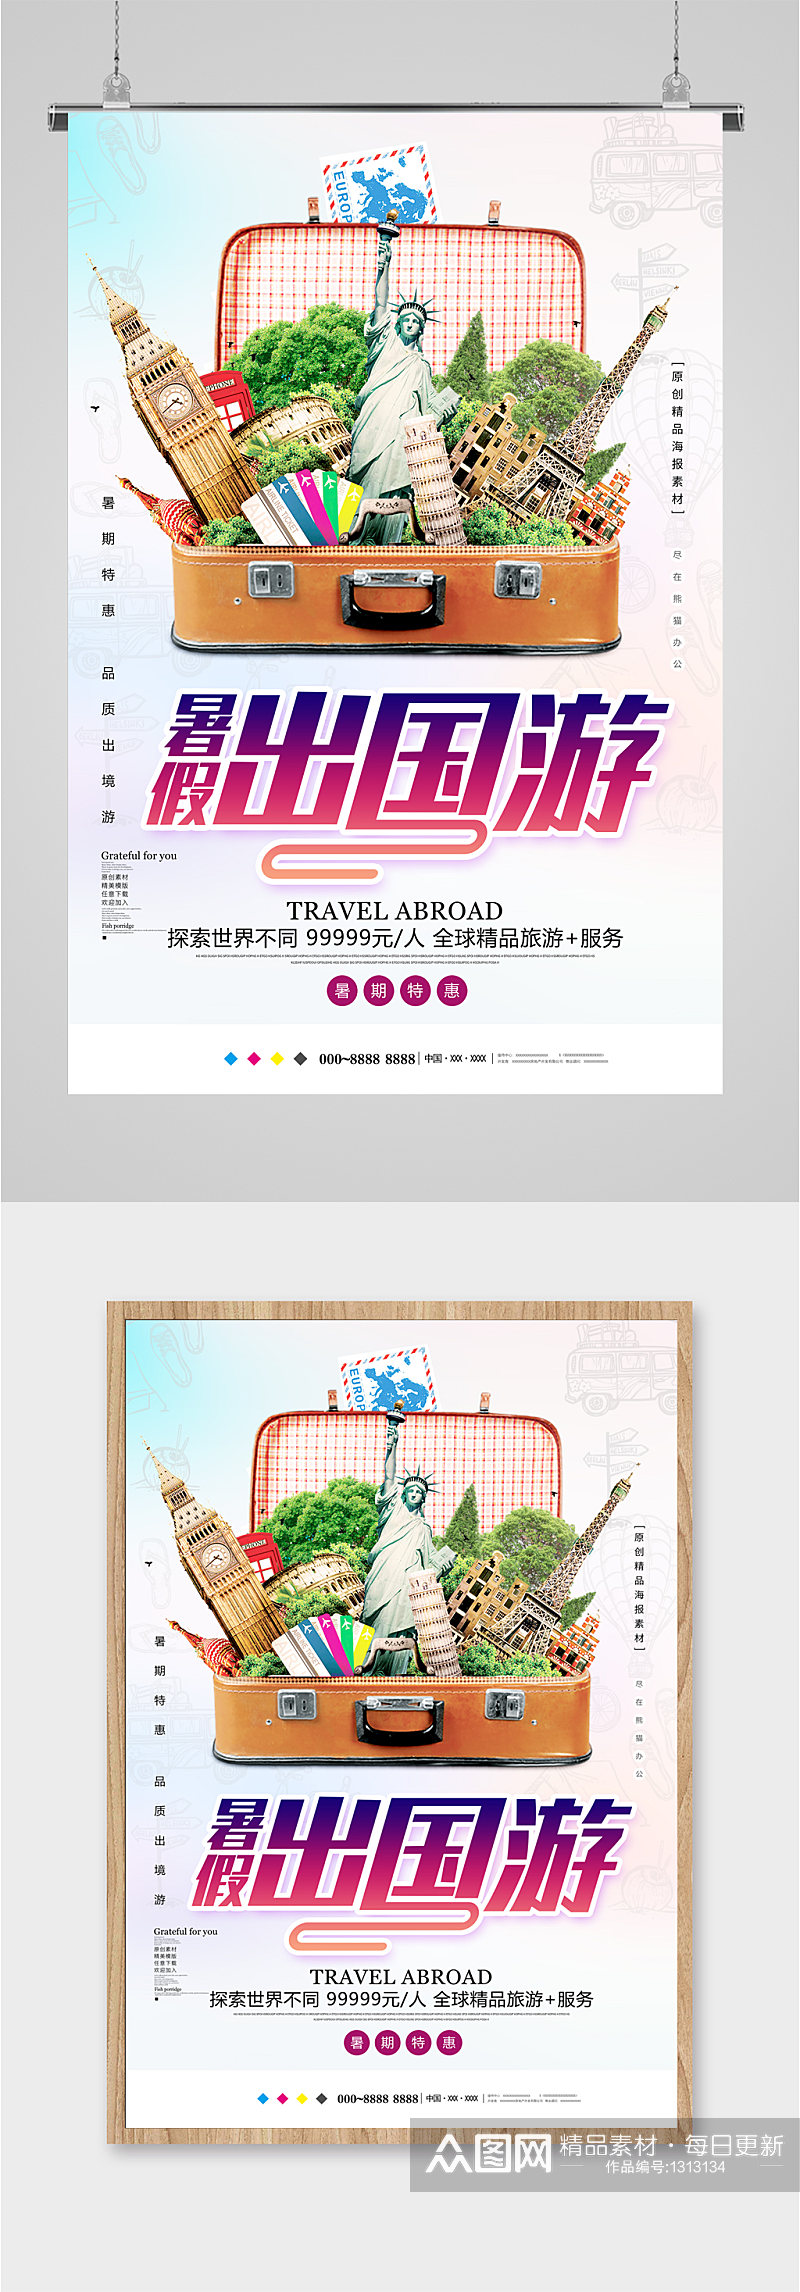 出国旅游旅行社海报素材